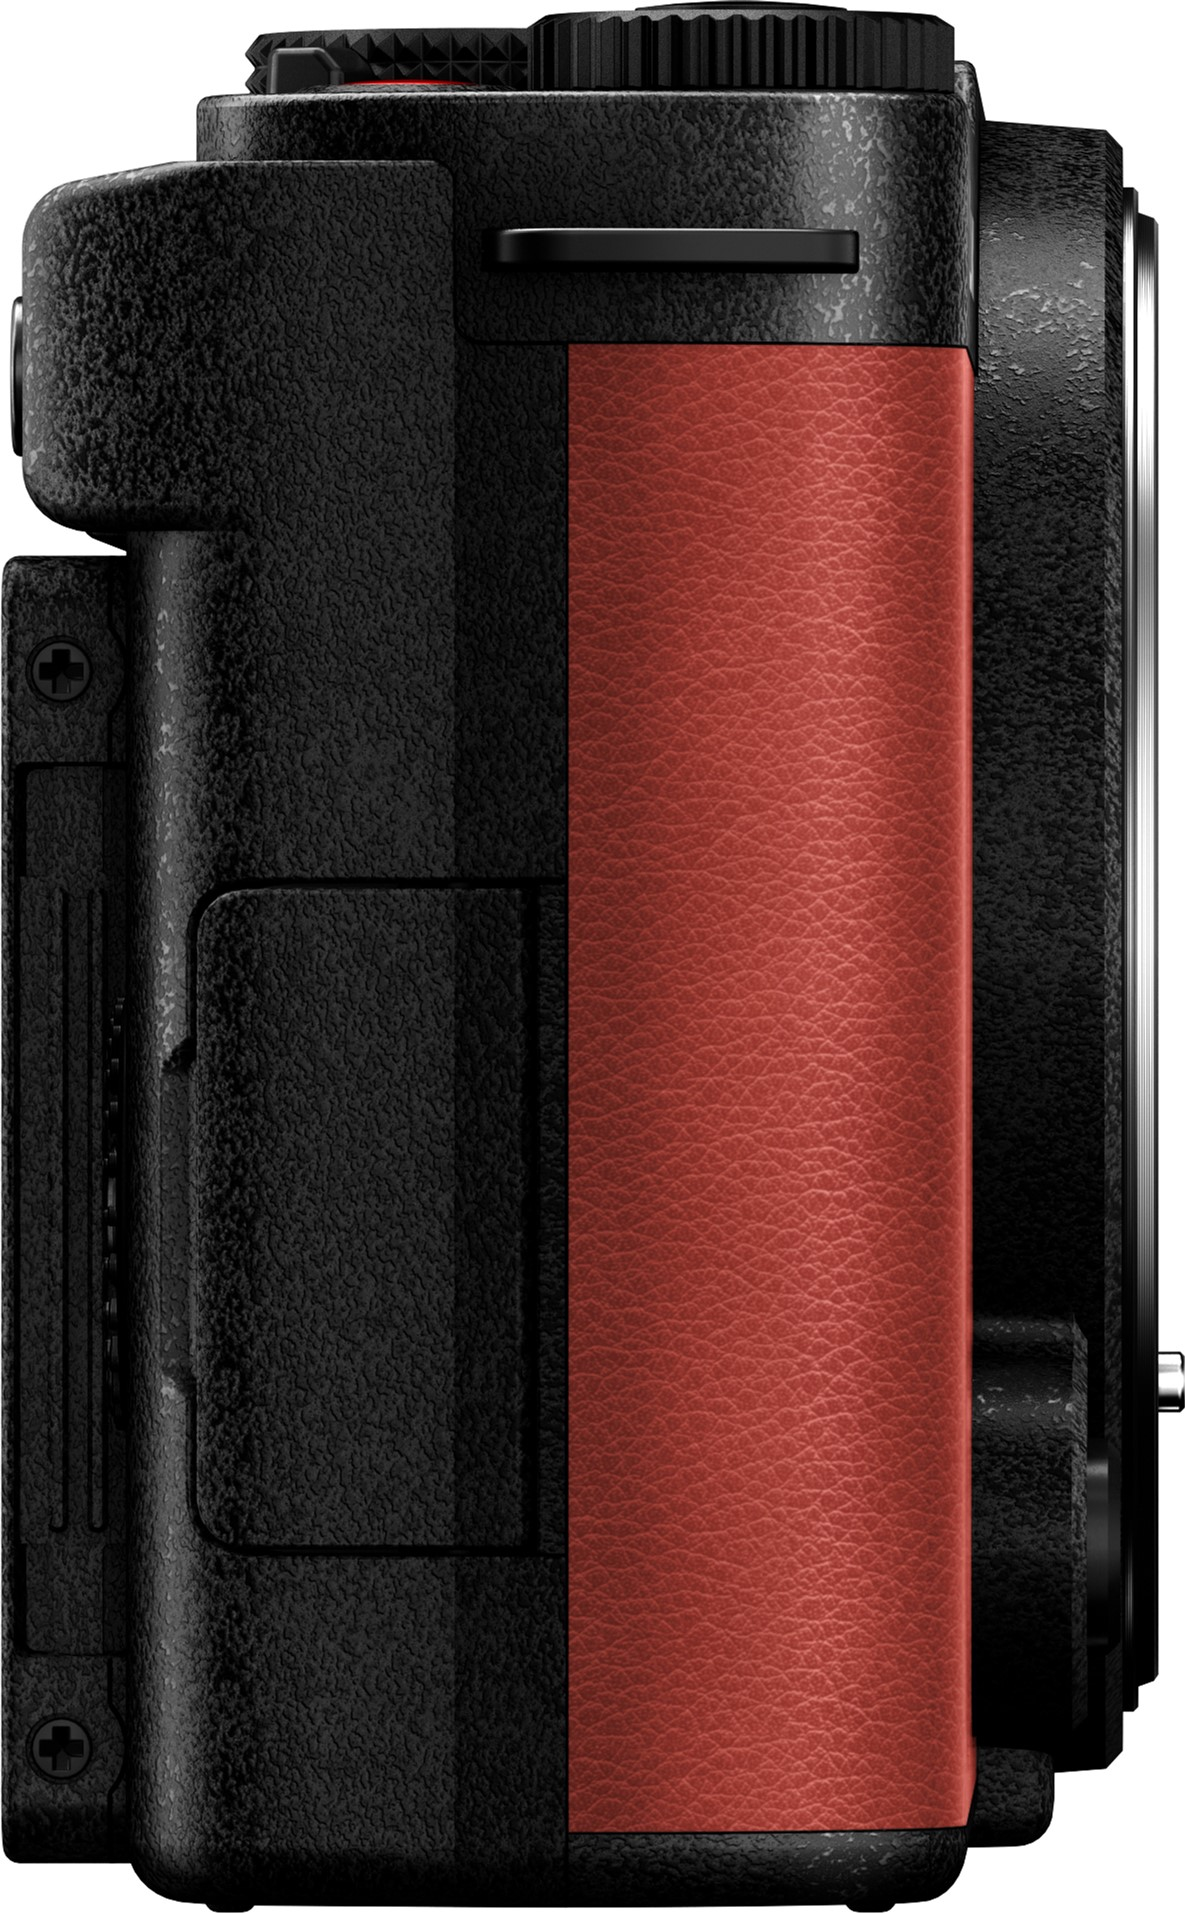 Фотоапарат Panasonic Lumix DC-S9 + 20-60mm f/3.5-5.6 Crimson Red (DC-S9KE-R)фото7